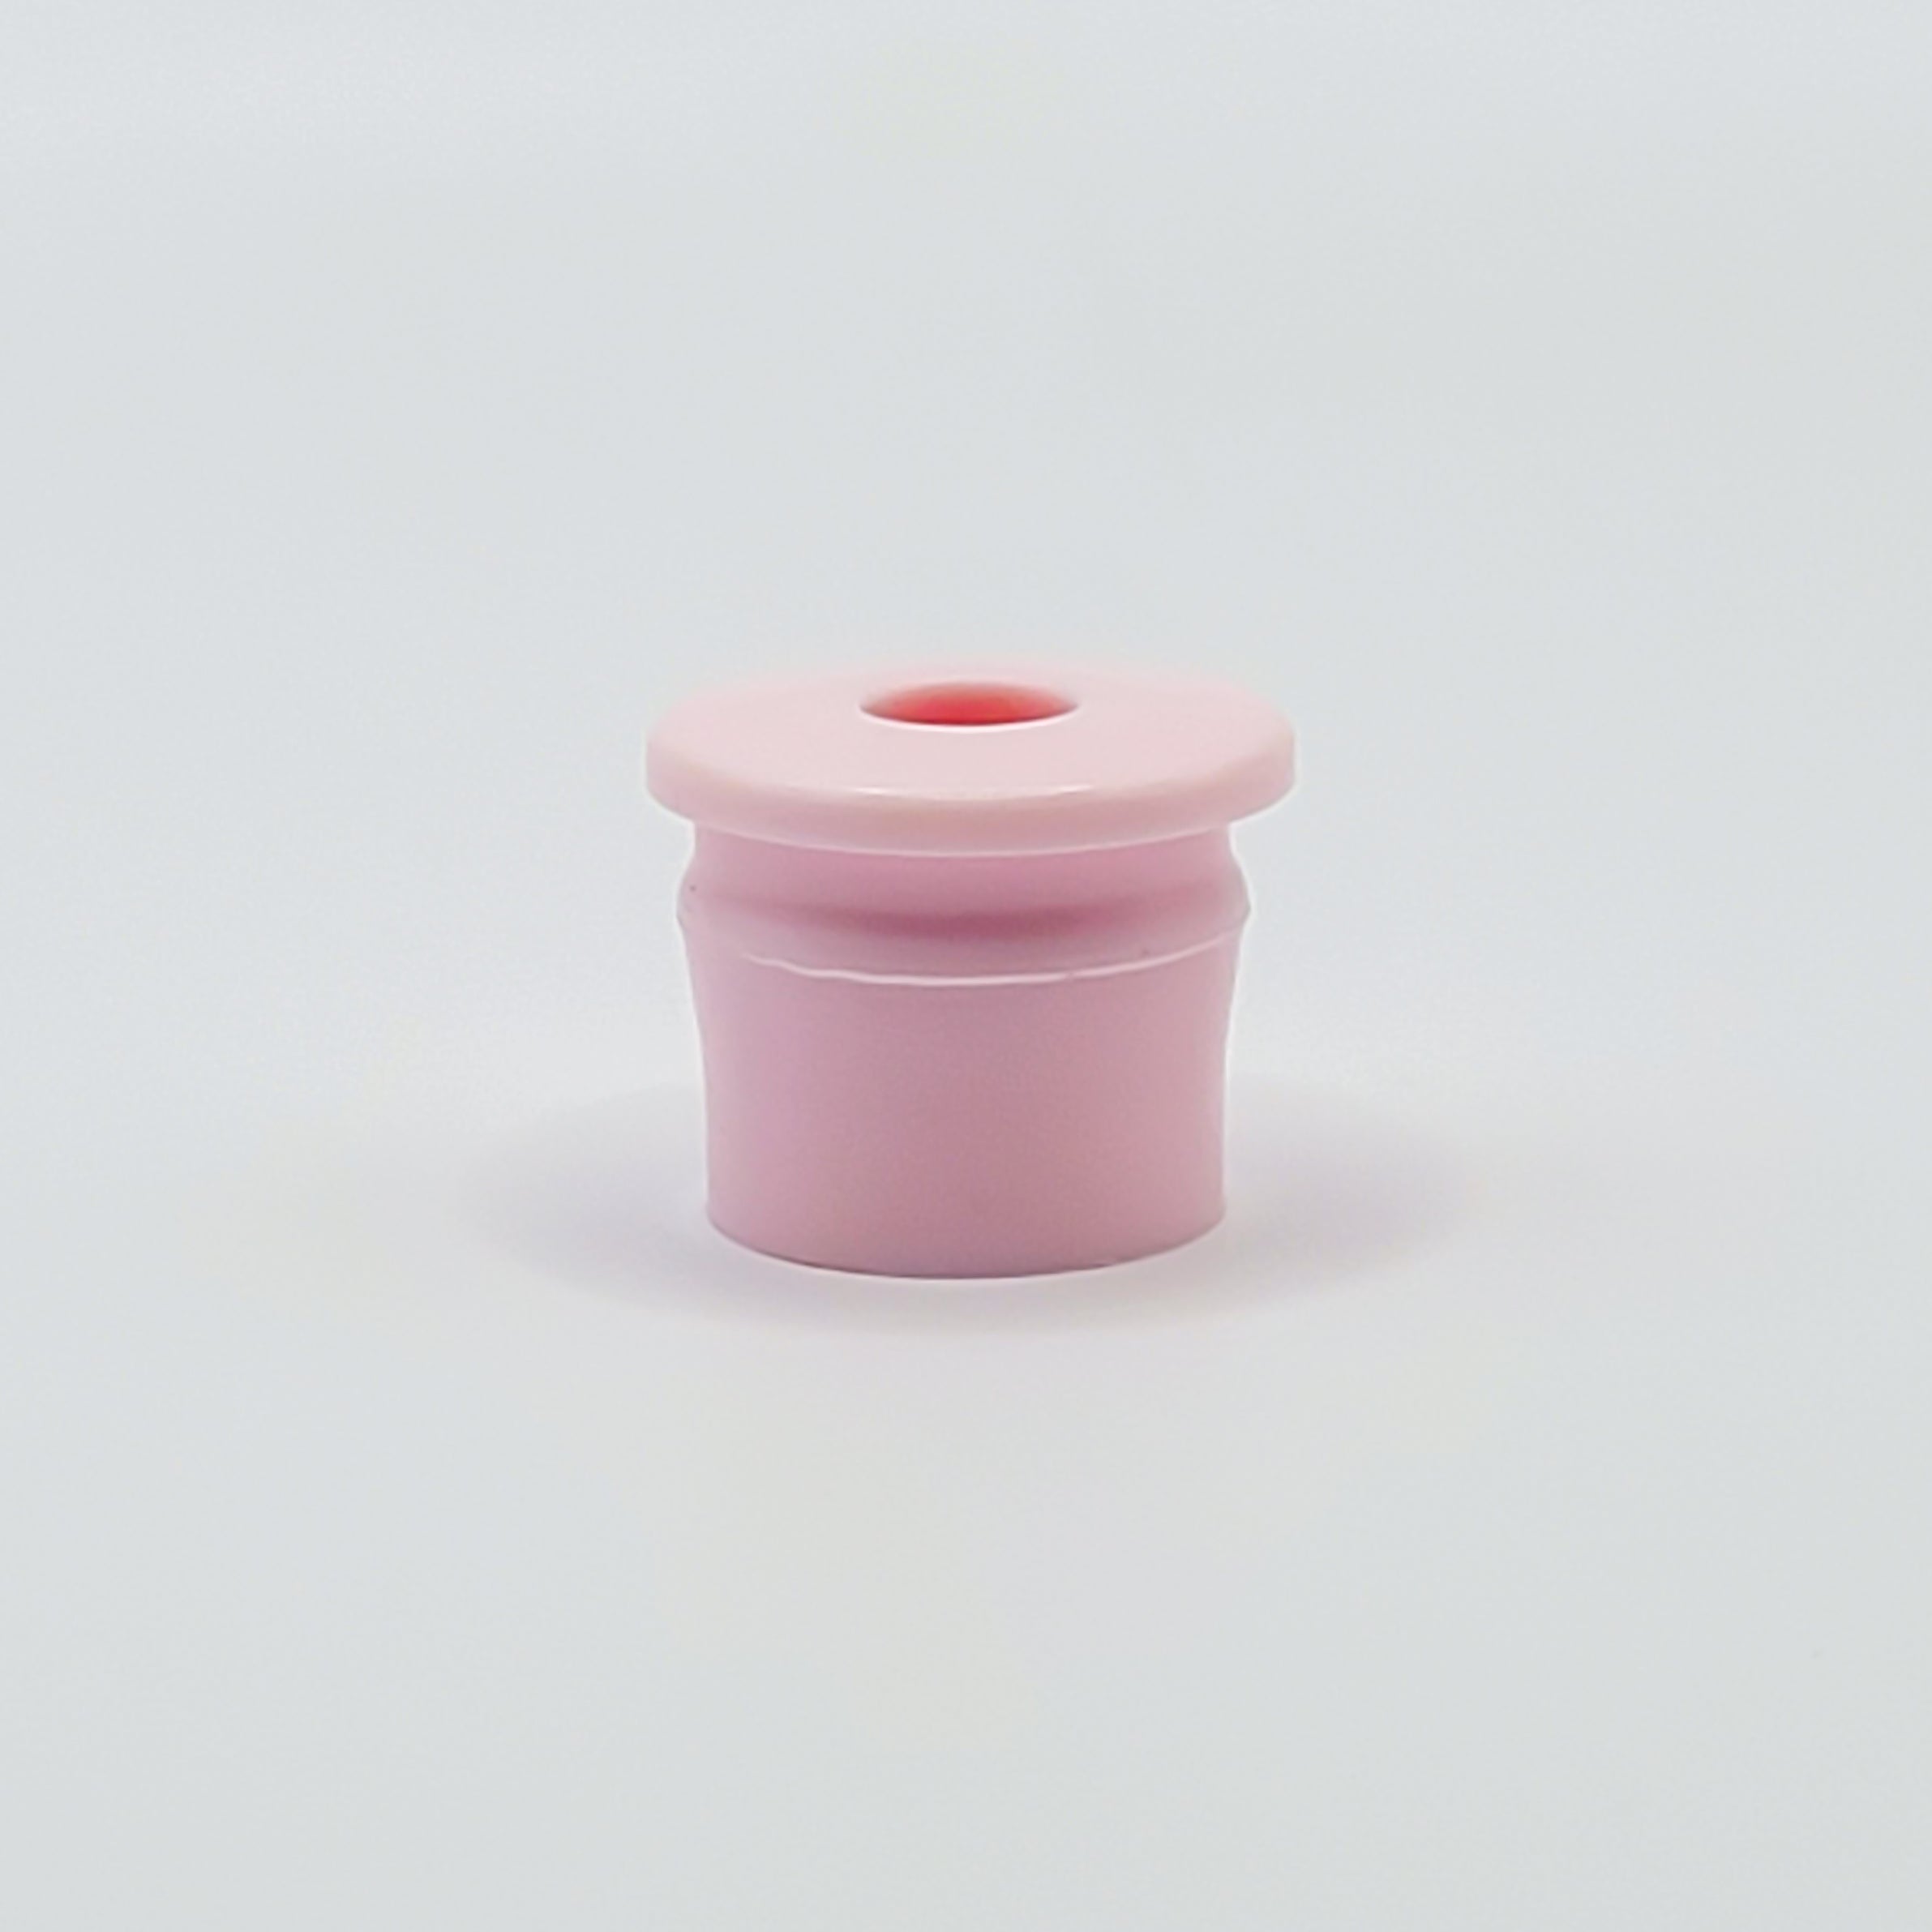 Unguator Varionozzle - 4mm (Pink)